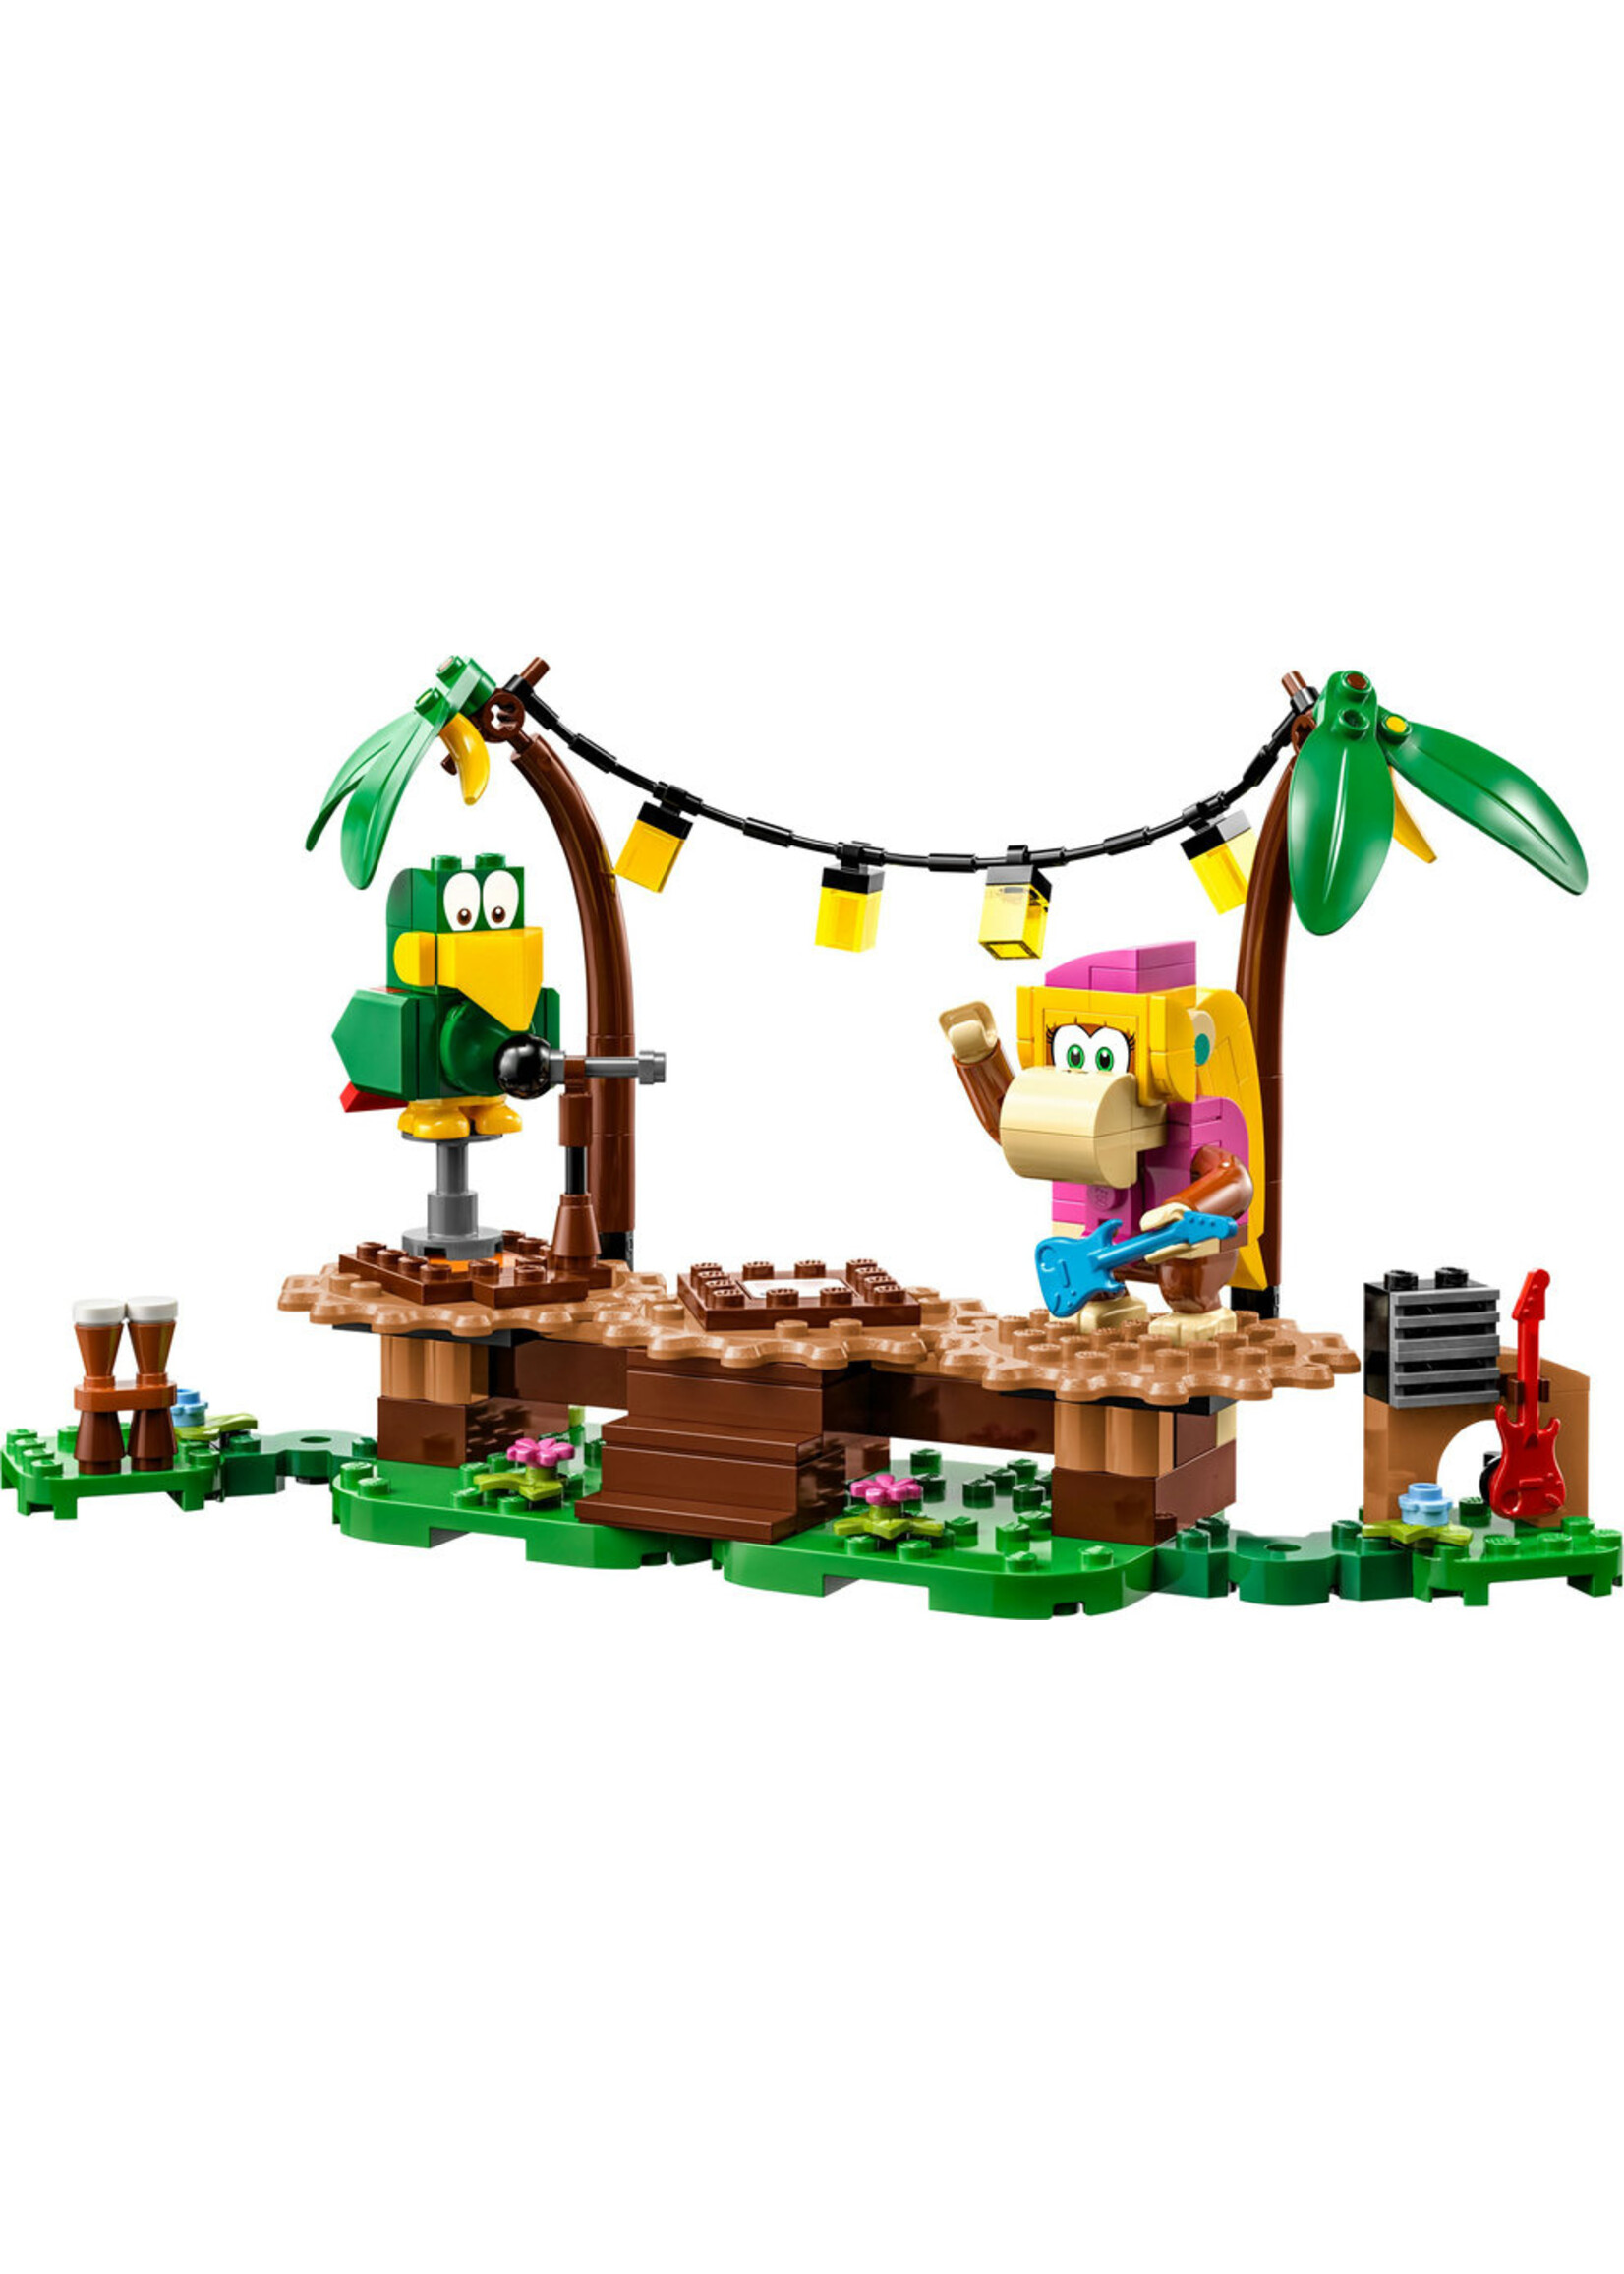 LEGO 71421 - Dixie Kong's Jungle Jam Expansion Set